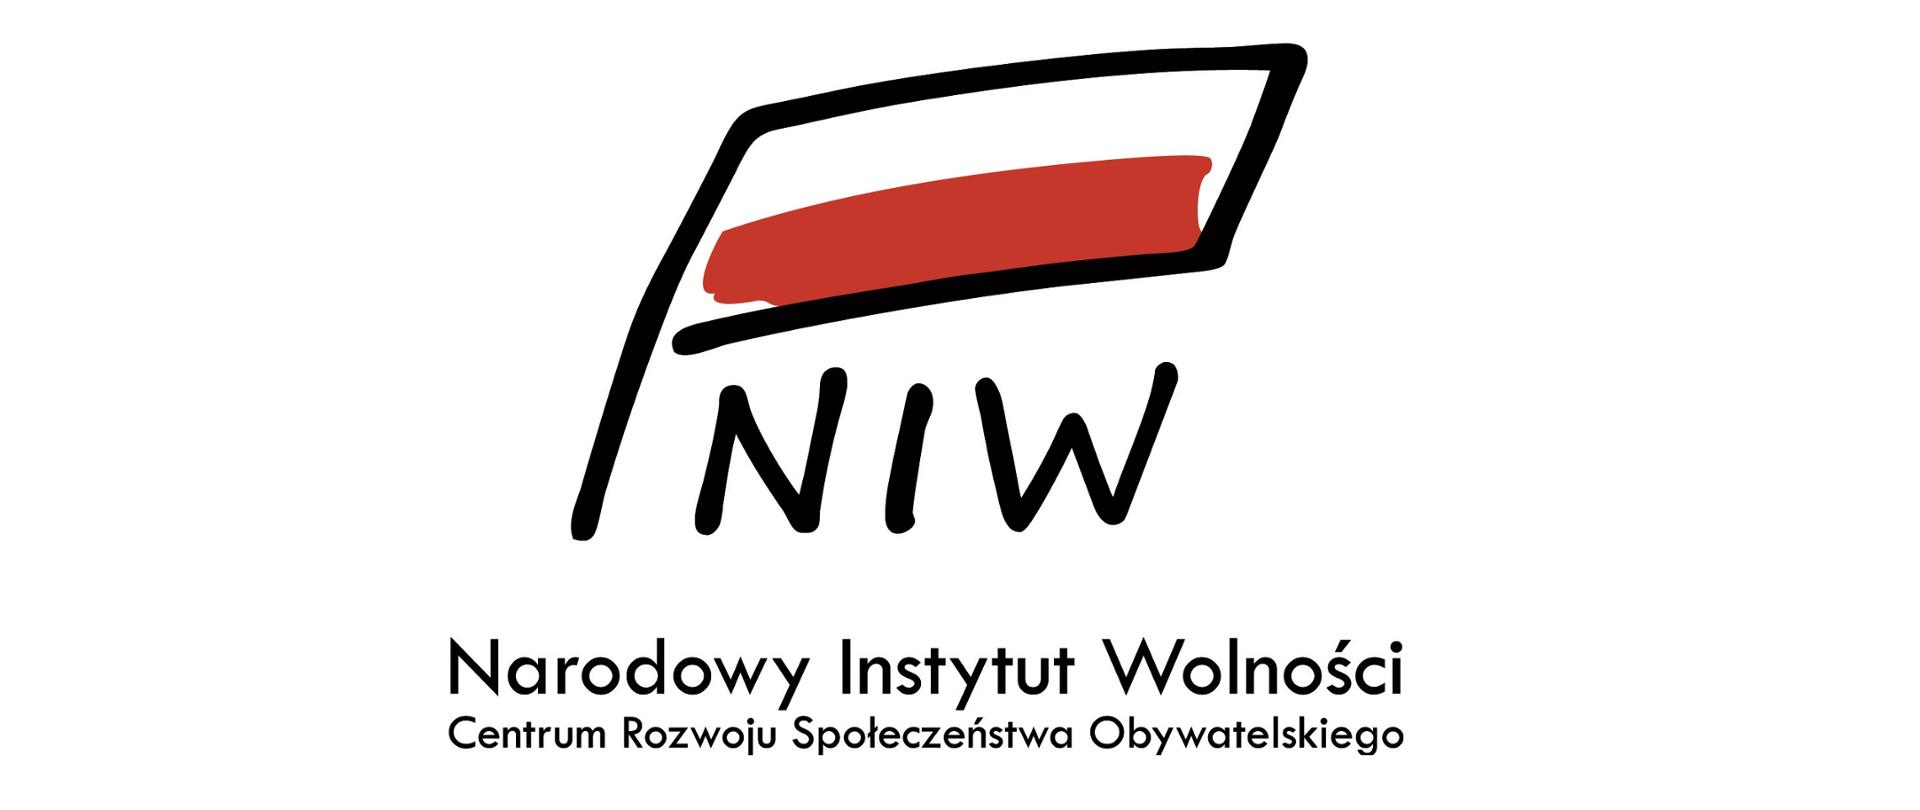 Grafika przedstawiając biało-czerwoną flagę pod którą znajduje się skrót NIW i napis Narodowy Instytut Wolności Centrum Rozwoju Społeczeństwa Obywatelskiego.